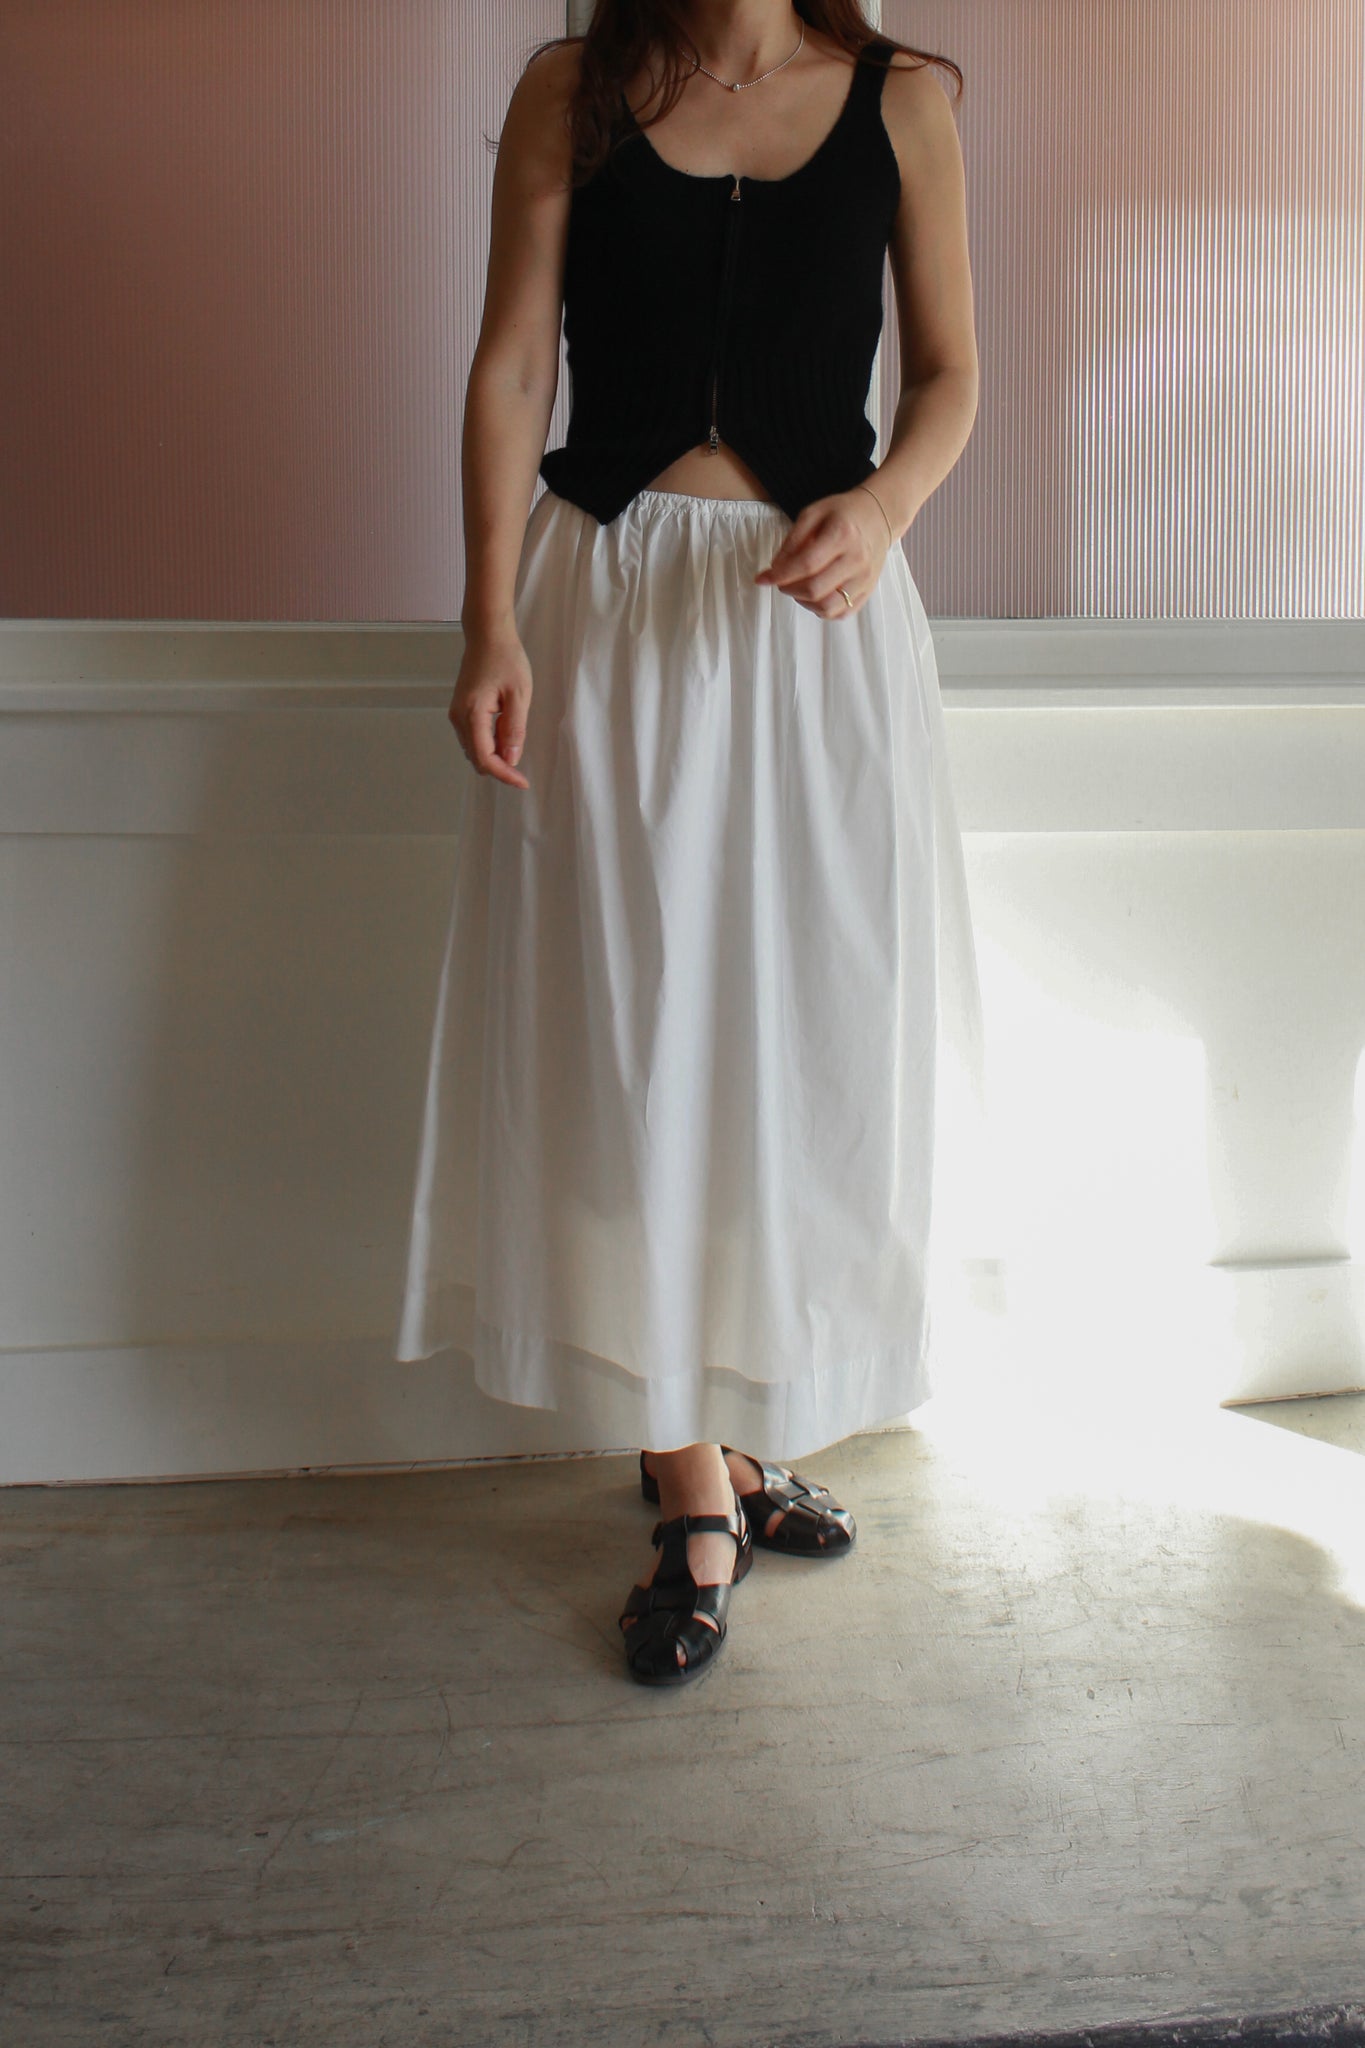 Shirring Flare Skirt in White